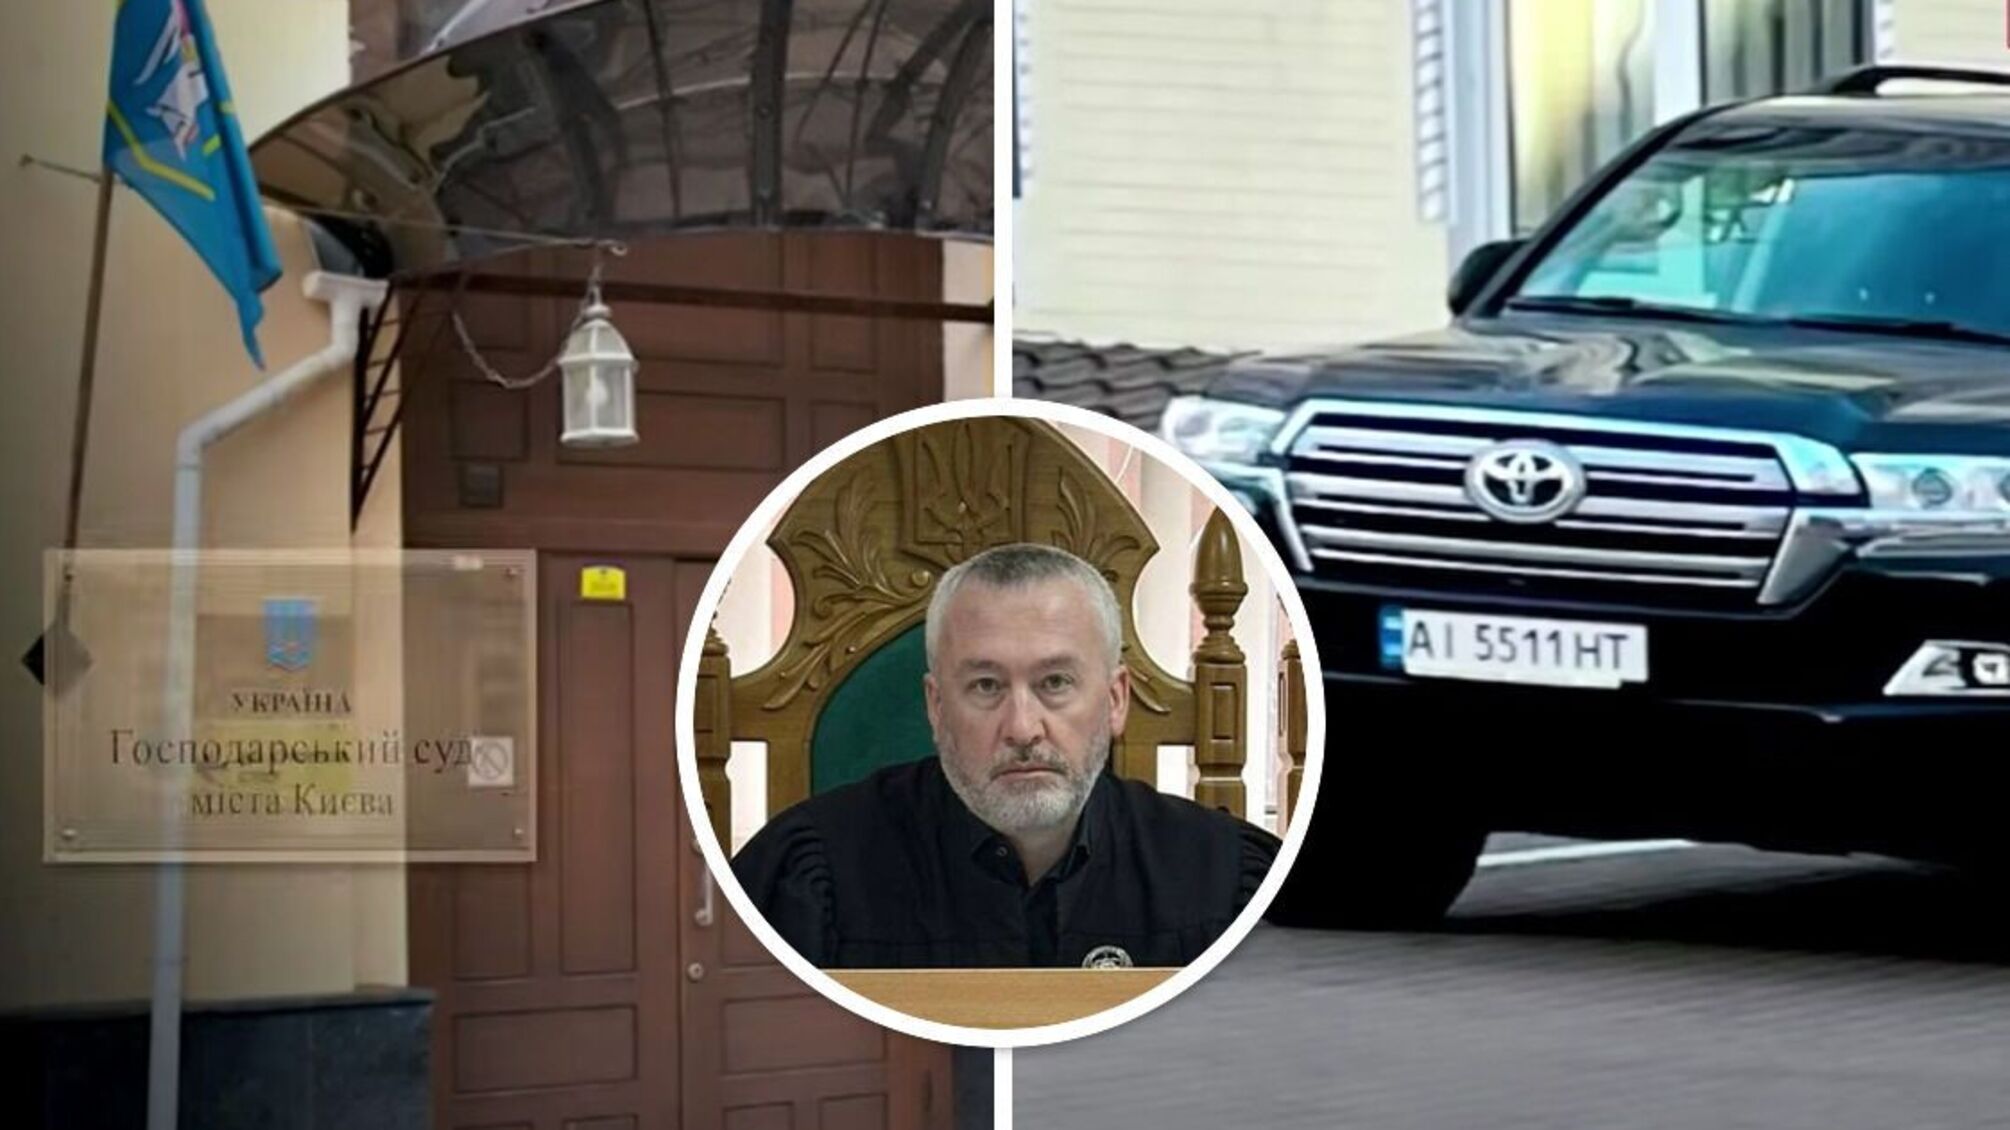 Судья Босой пользуется дорогим автомобилем, записанным на отца, и неоднократно получал миллионные 'подарки'